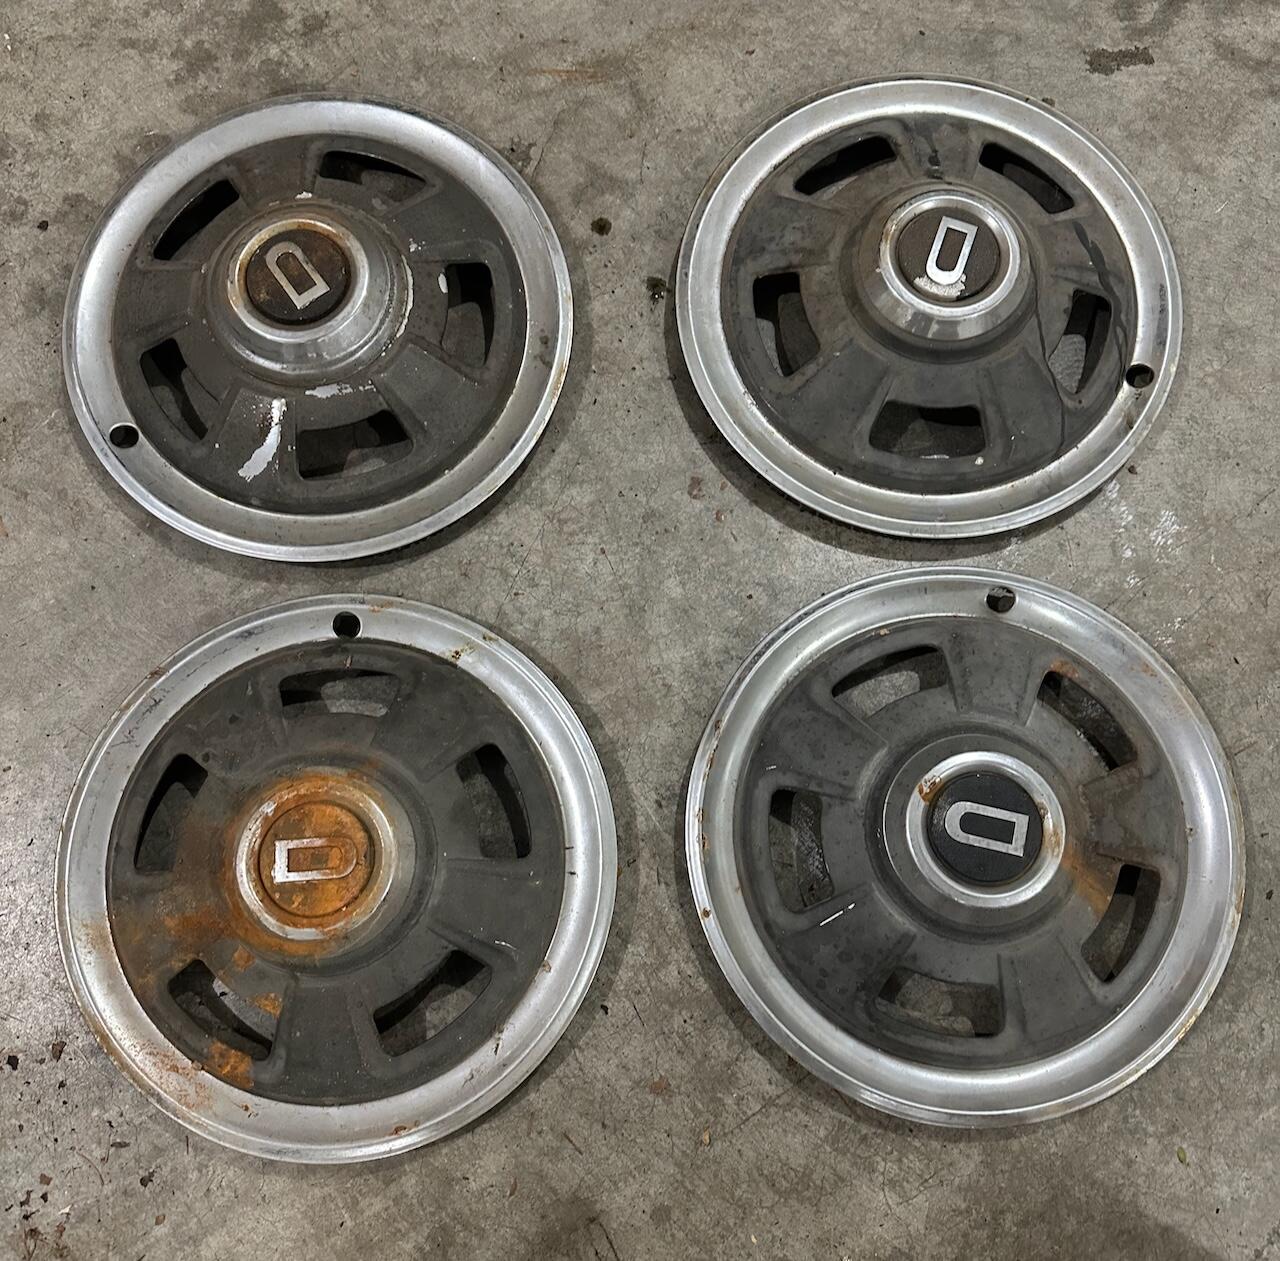 240Z hubcaps